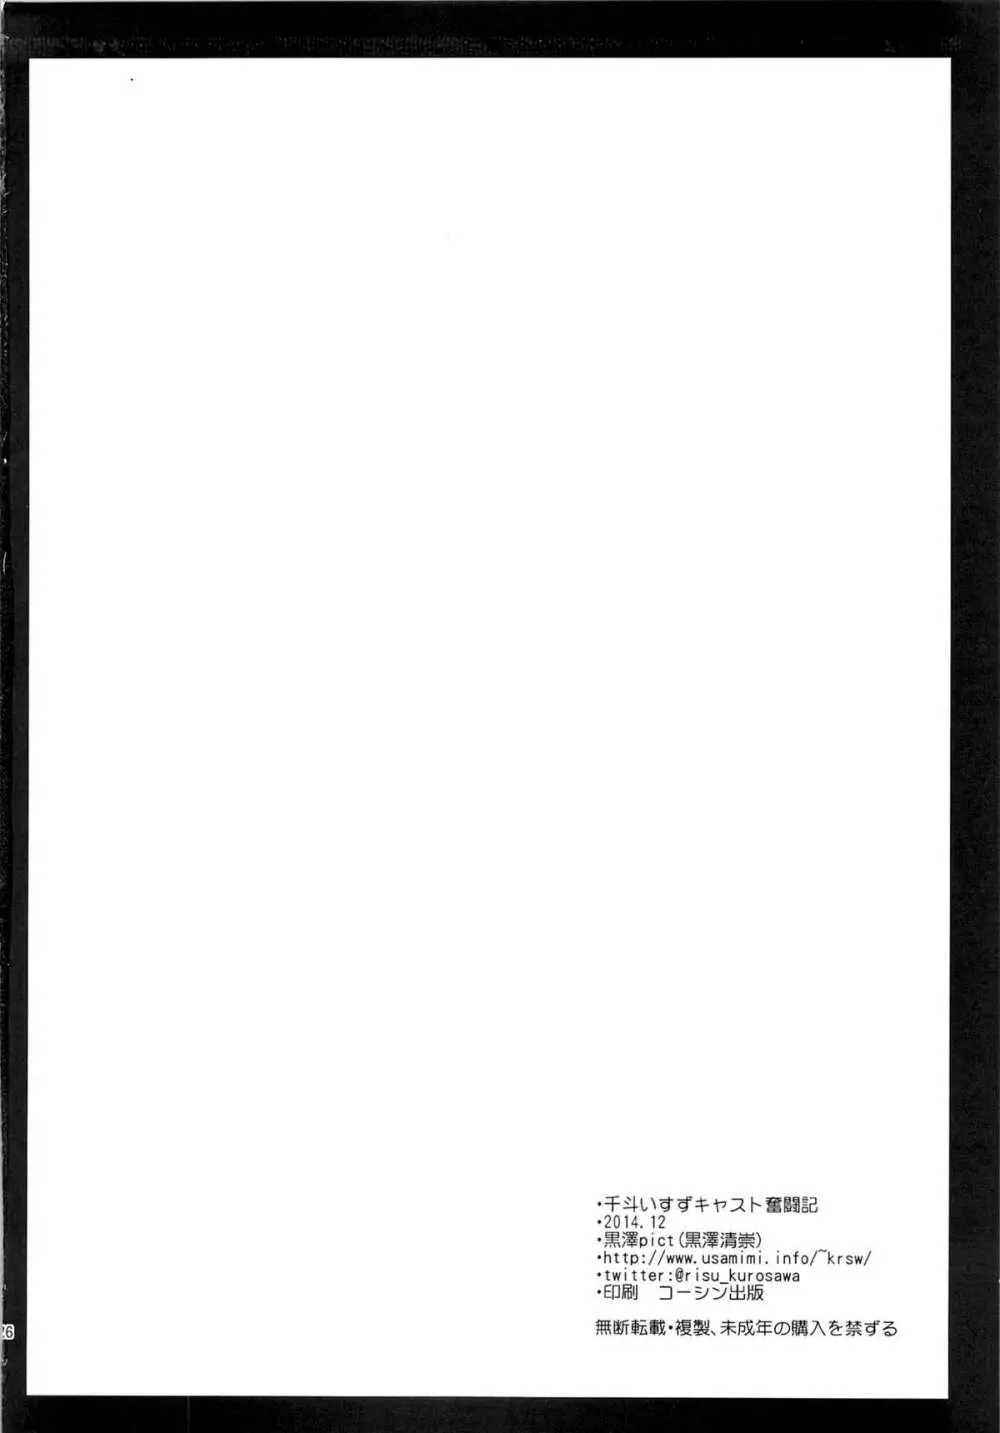 千斗いすずキャスト奮闘記 25ページ